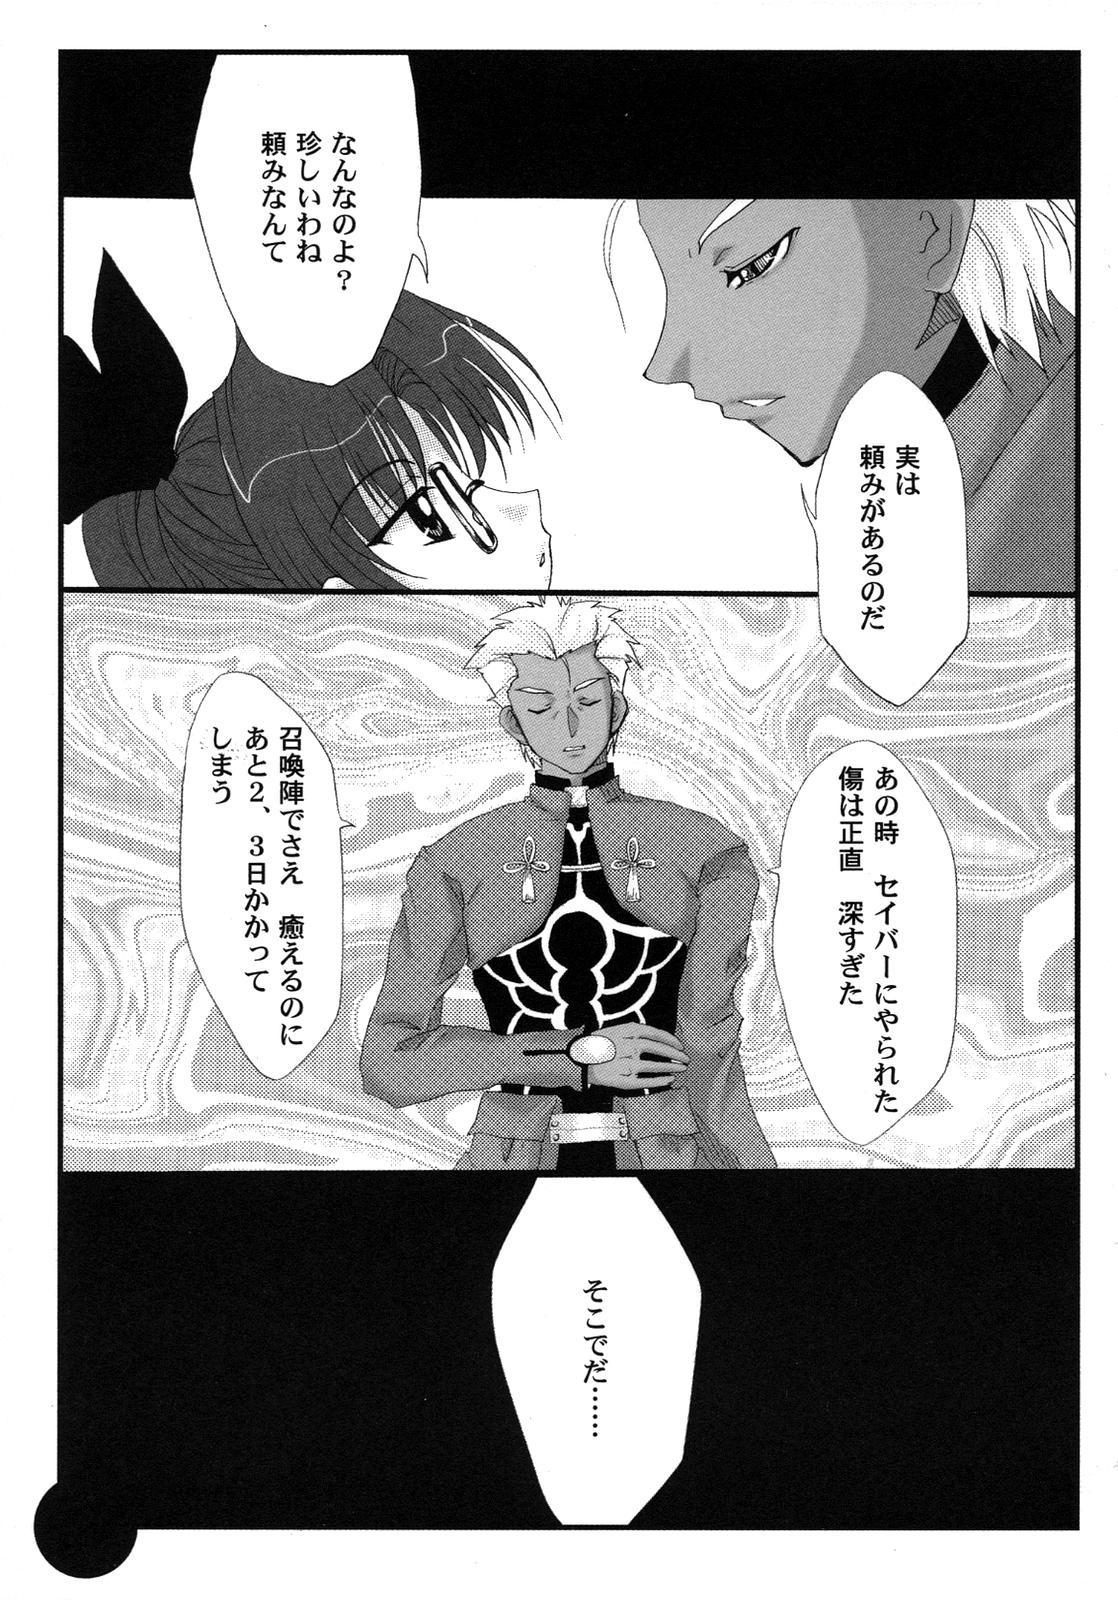 Fate Knight Vol. 6 43